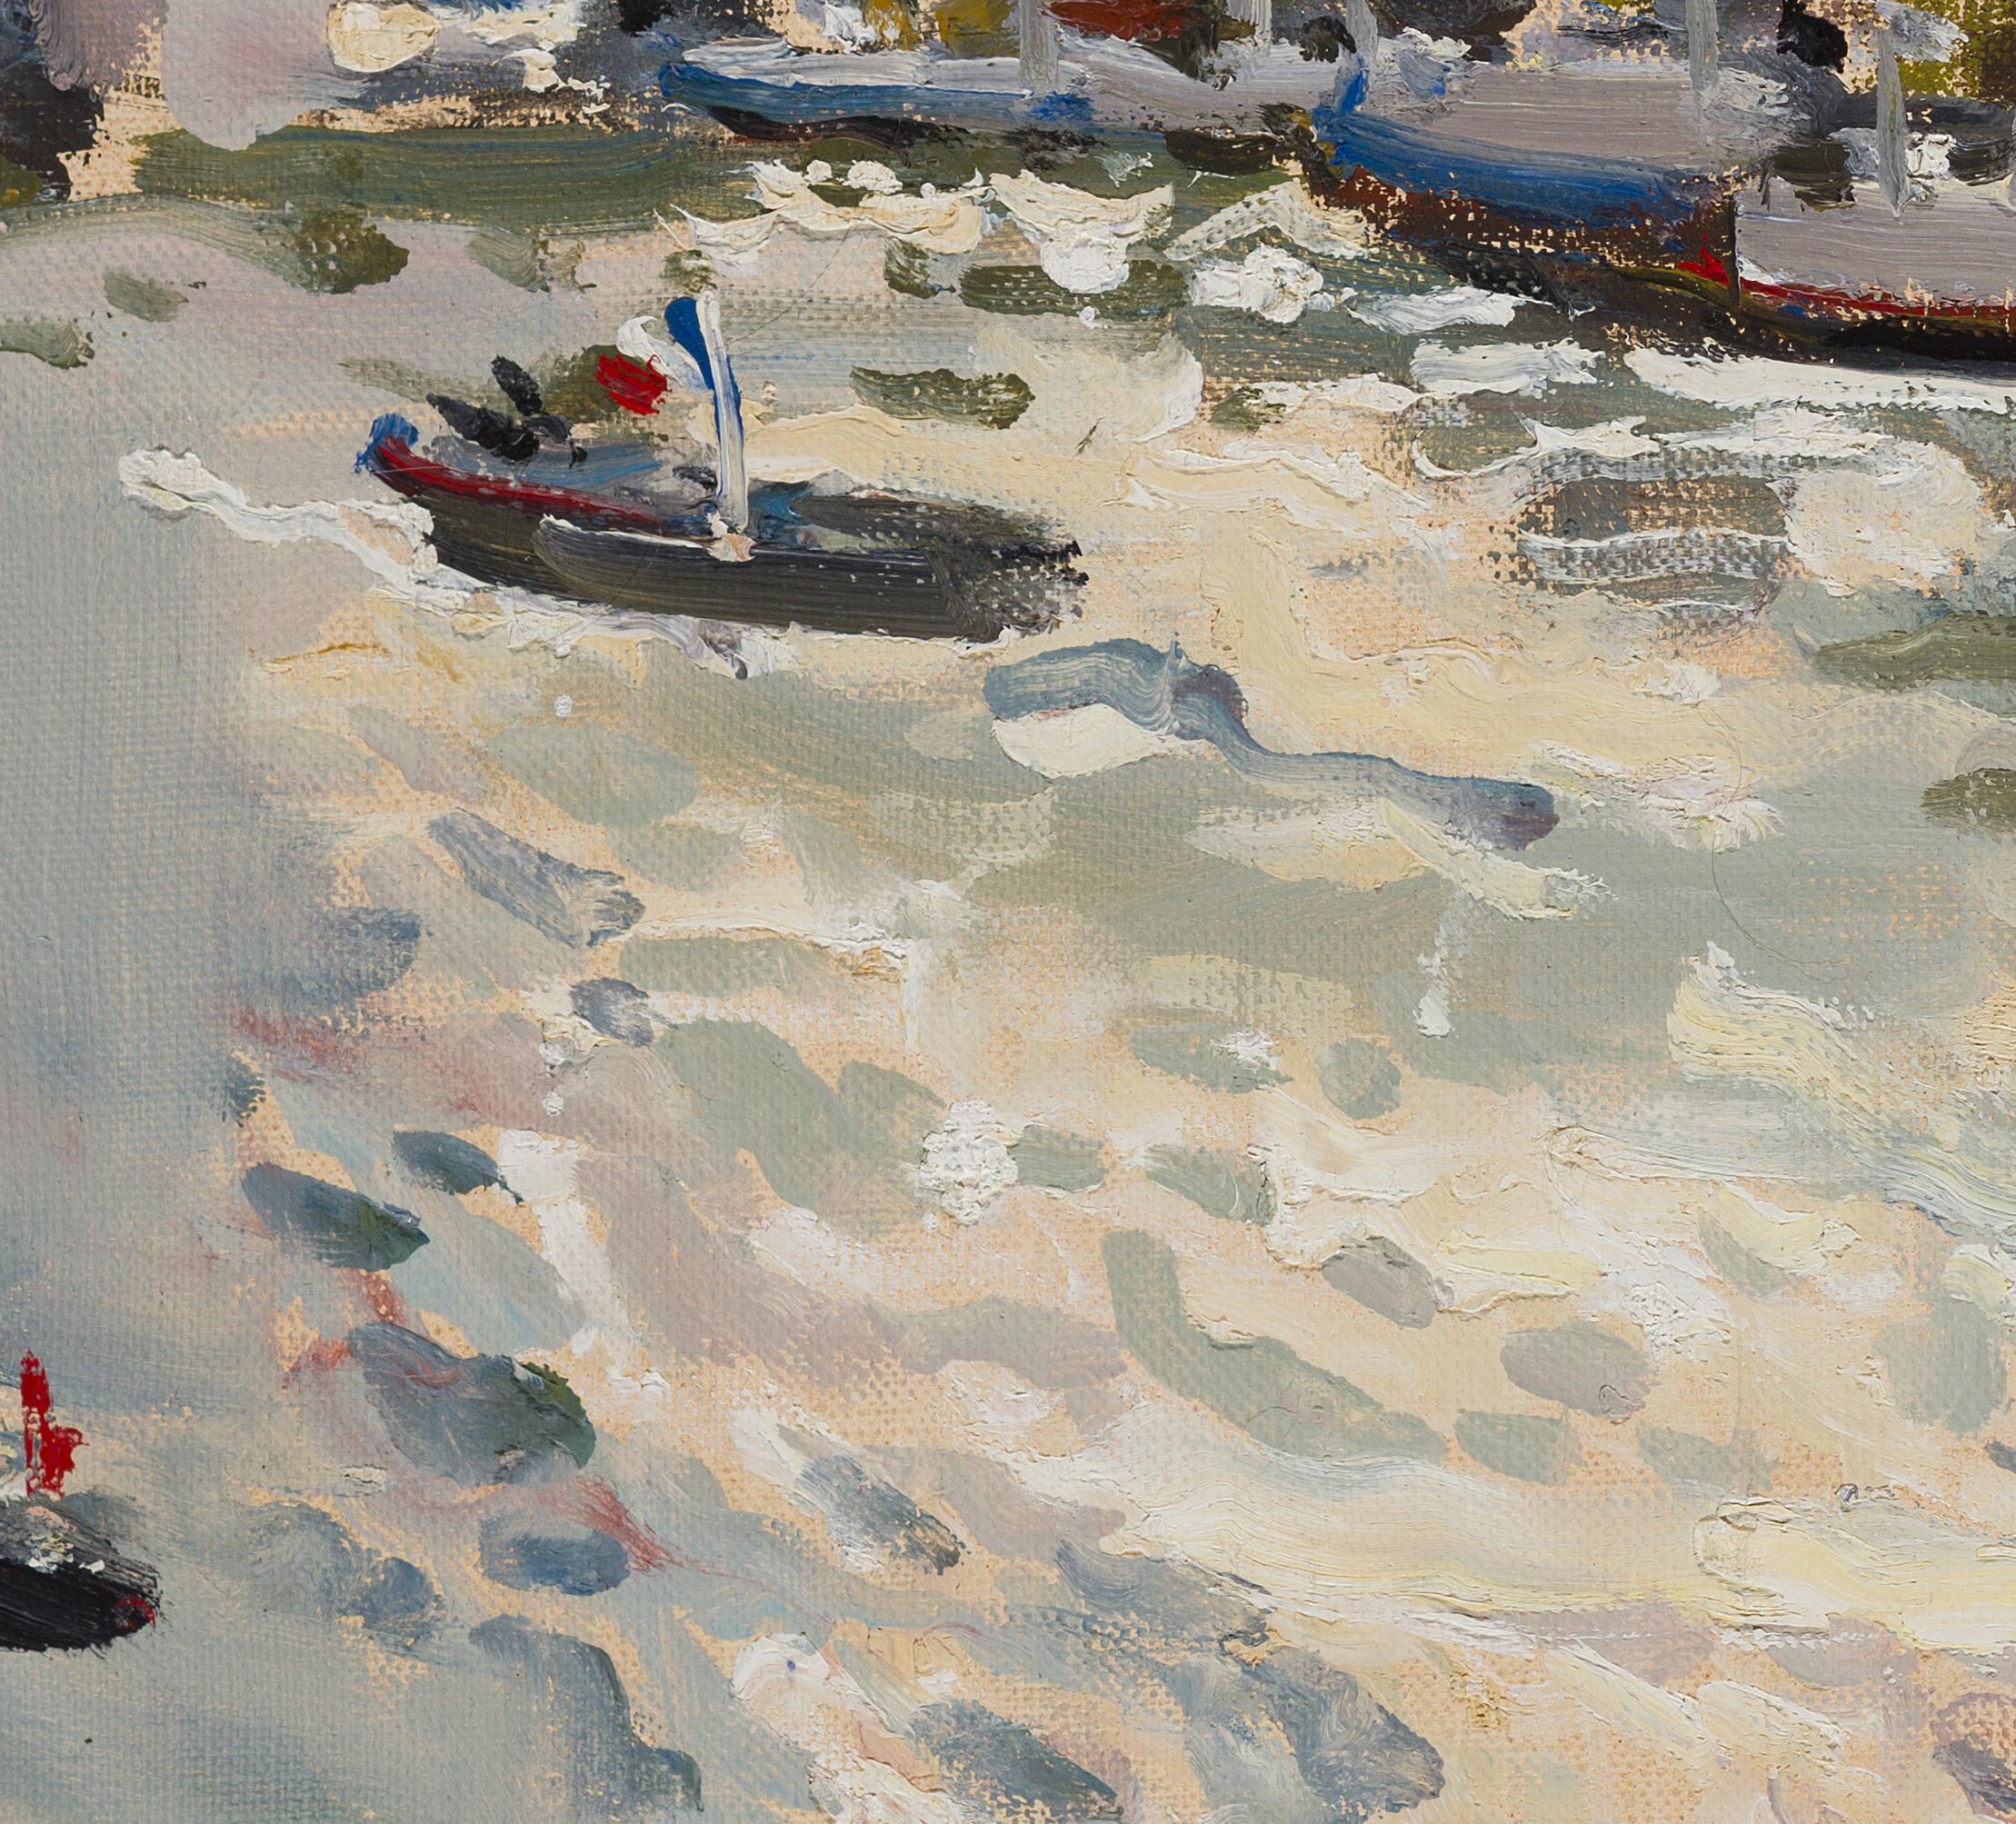 Seine. Paris - 21st Century Contemporary Impressionism Landscape Oil Painting For Sale 3